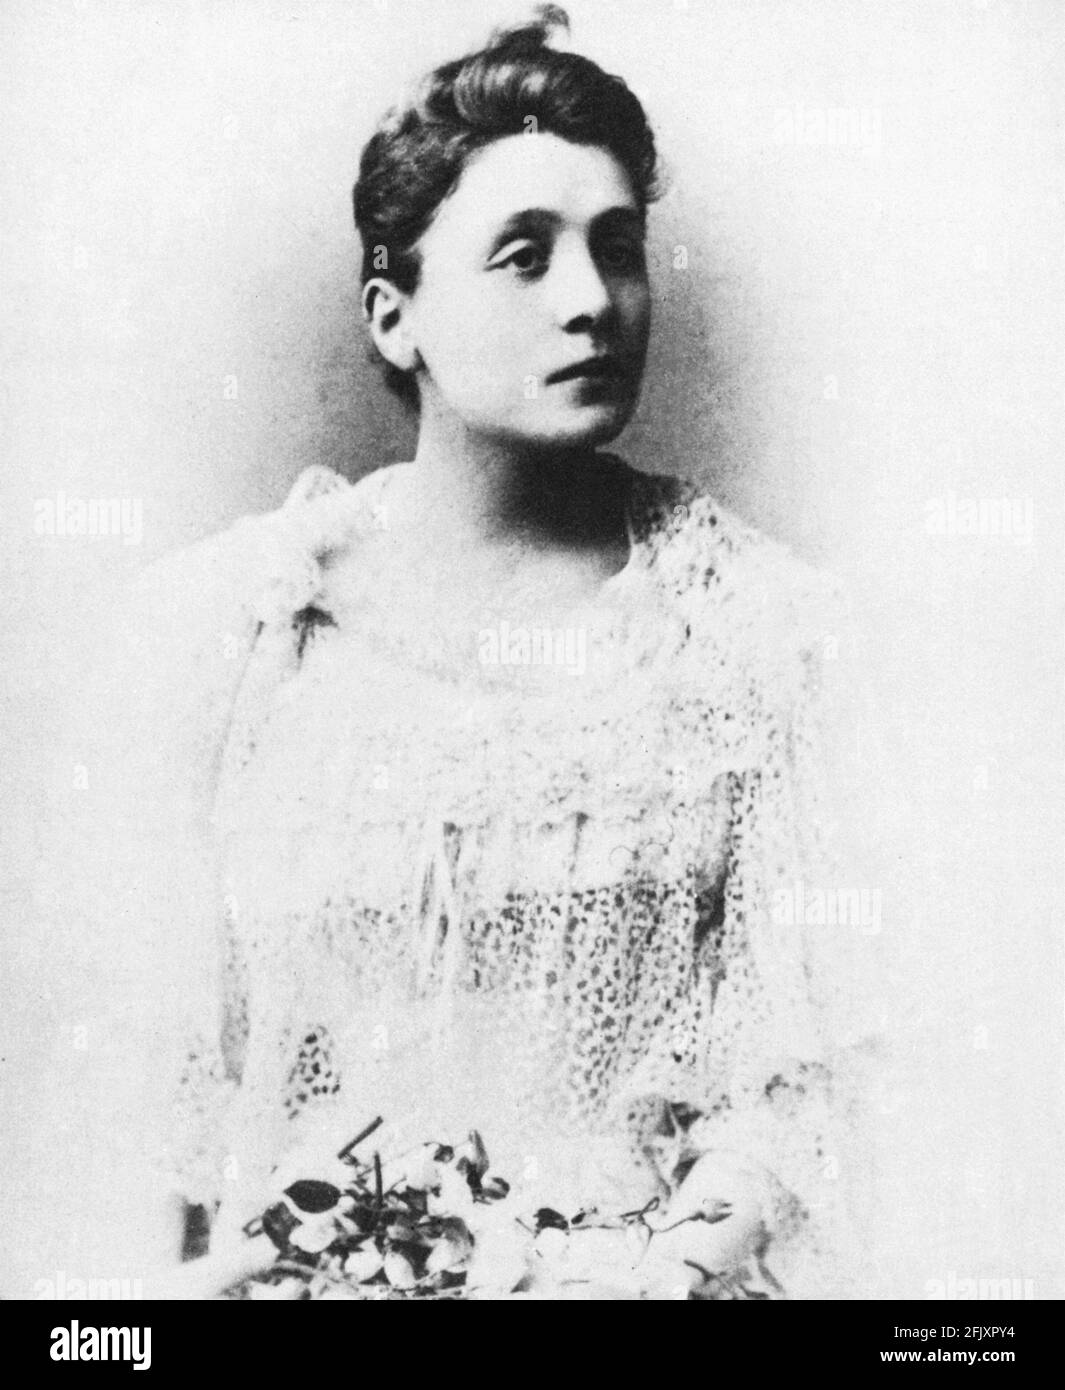 1880 ca. , ITALIEN : die berühmteste italienische Schauspielerin ELEONORA DUSE ( 1858 - 1924 ) als jung war , Liebhaber des Dichters GABRIELE D'ANNUNZIO - THEATER - TEATRO - DANNNUNZIO - D' ANNUNZIO - divina - attrice teatrale - pizzo - Spitze - chignon ---- Archivio GBB Stockfoto